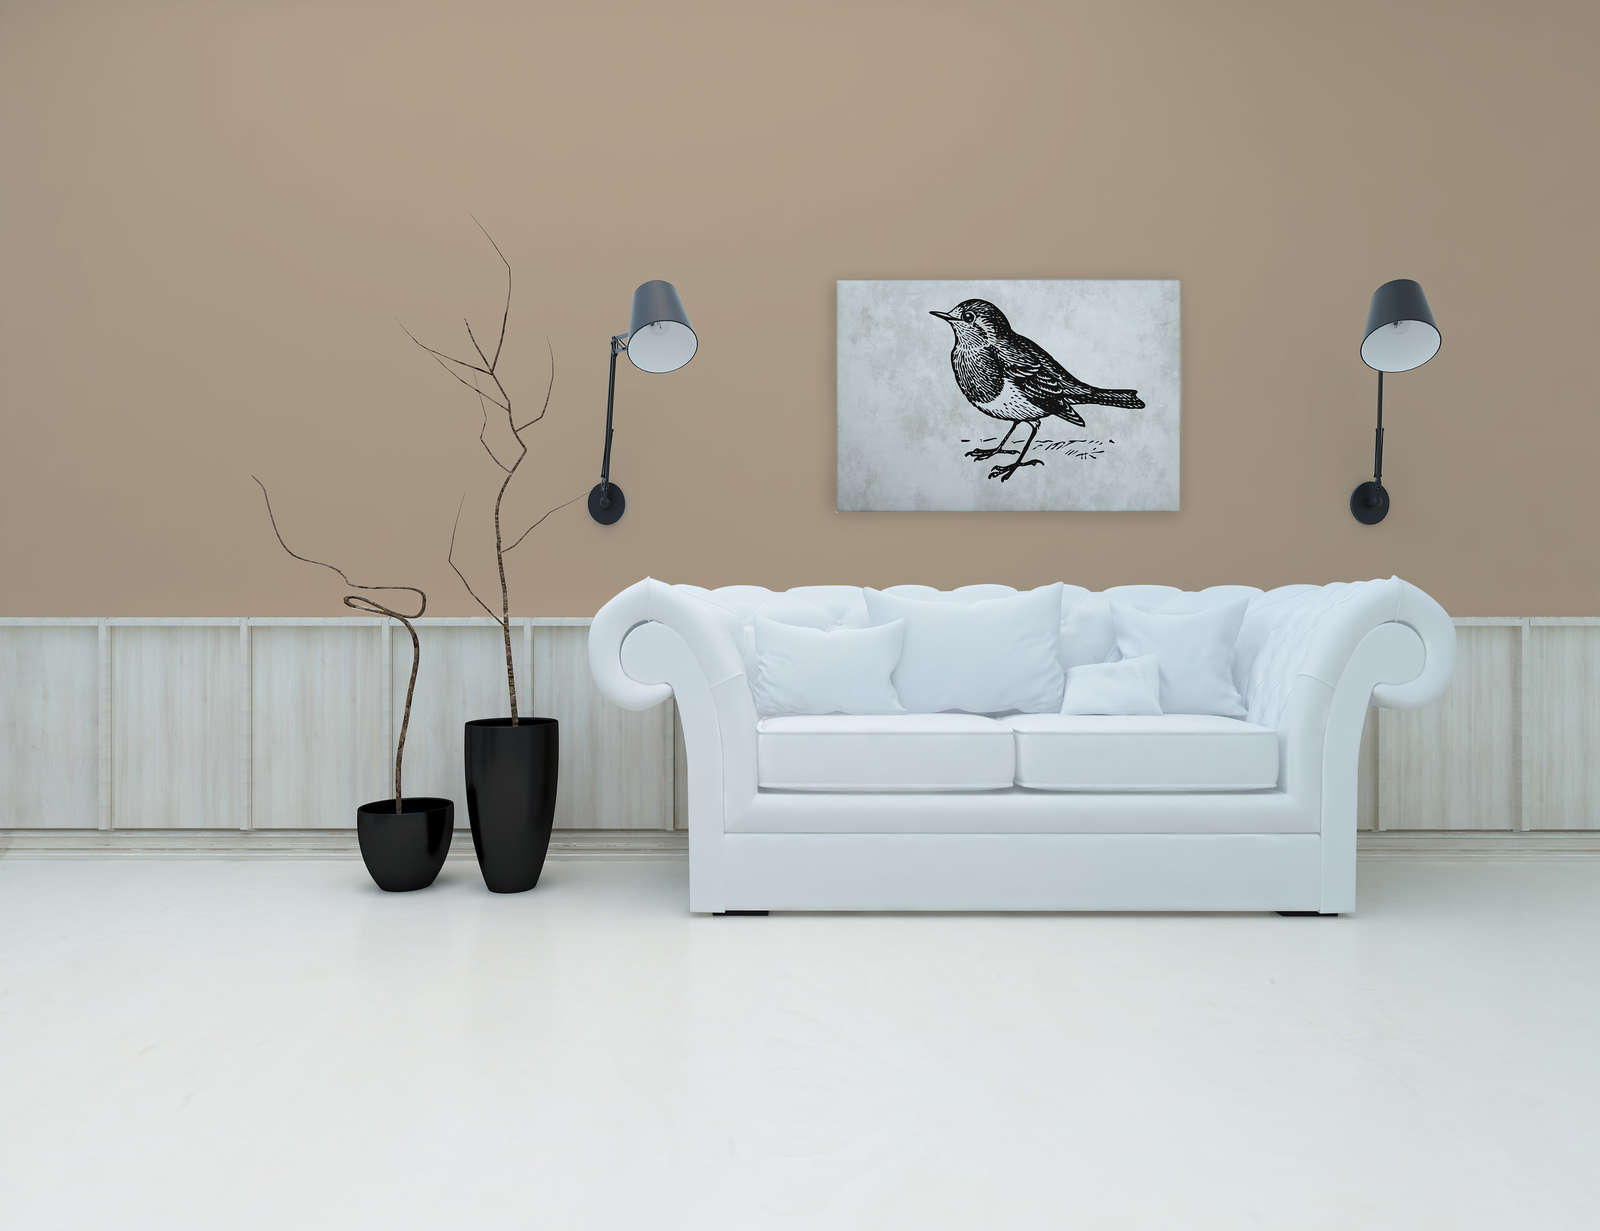             Zwart-wit canvas schilderij met vogel - 0,90 m x 0,60 m
        